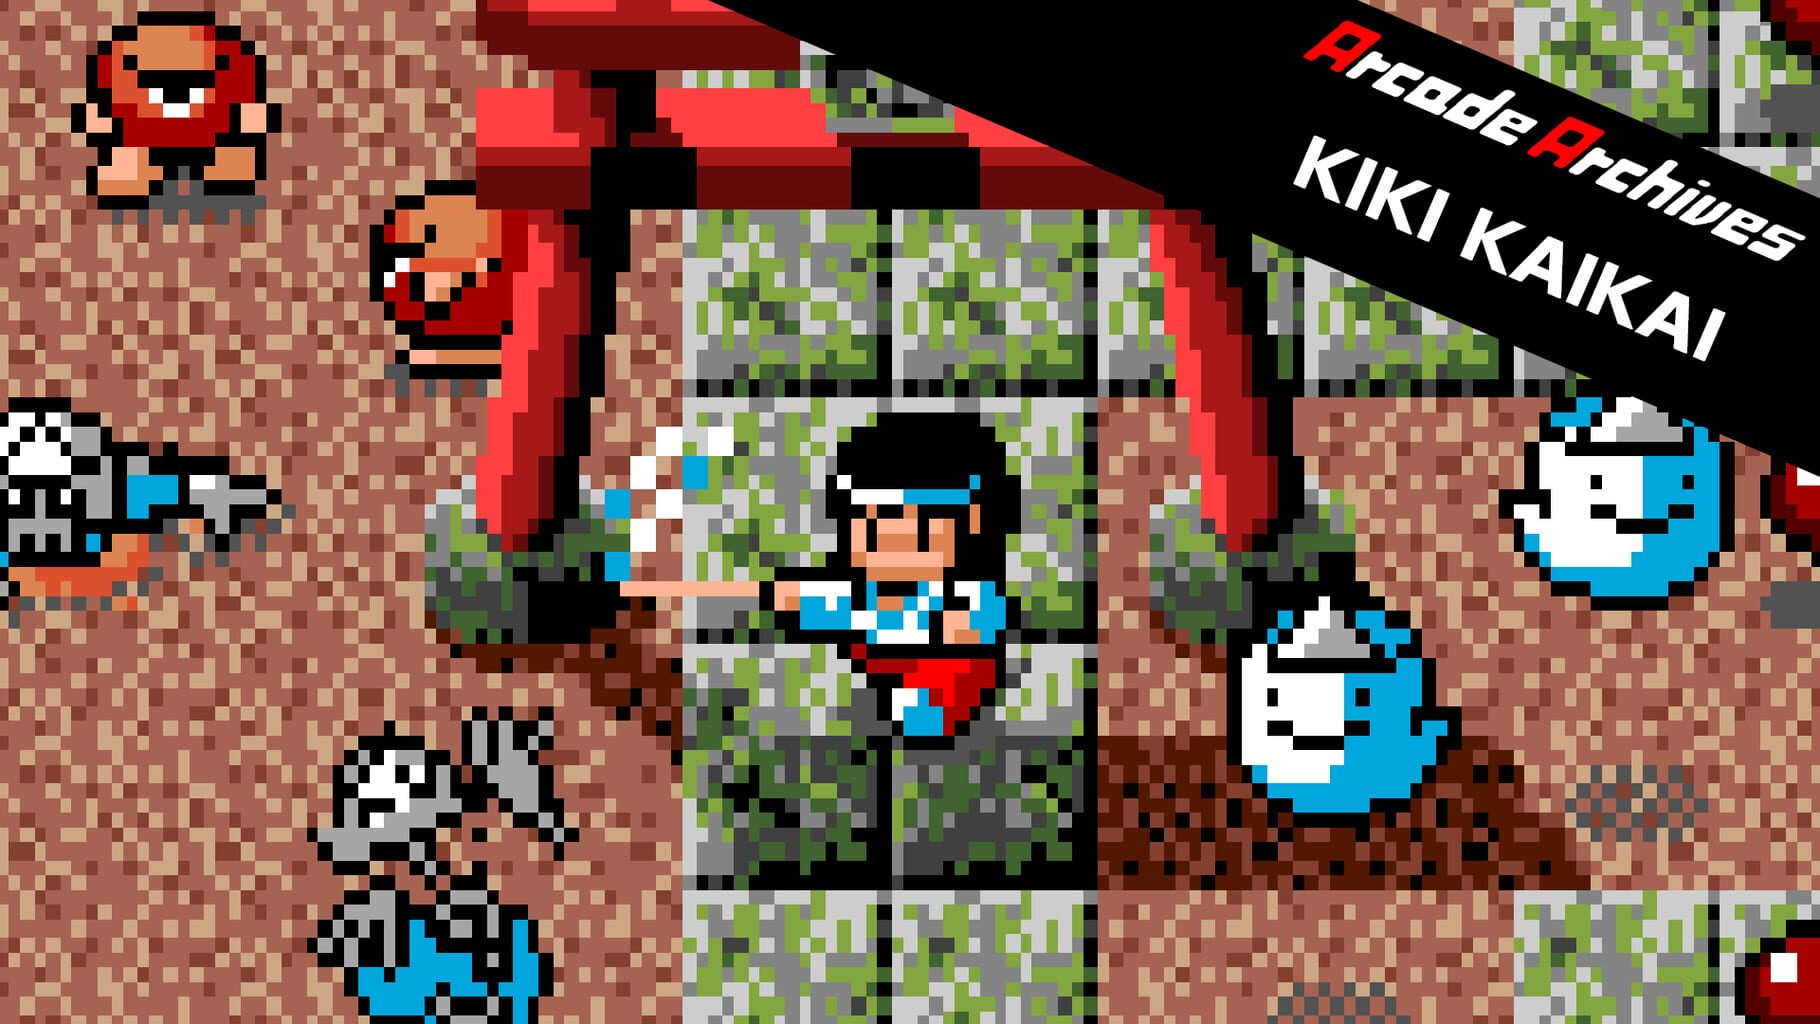 Arcade Archives: KiKi KaiKai artwork